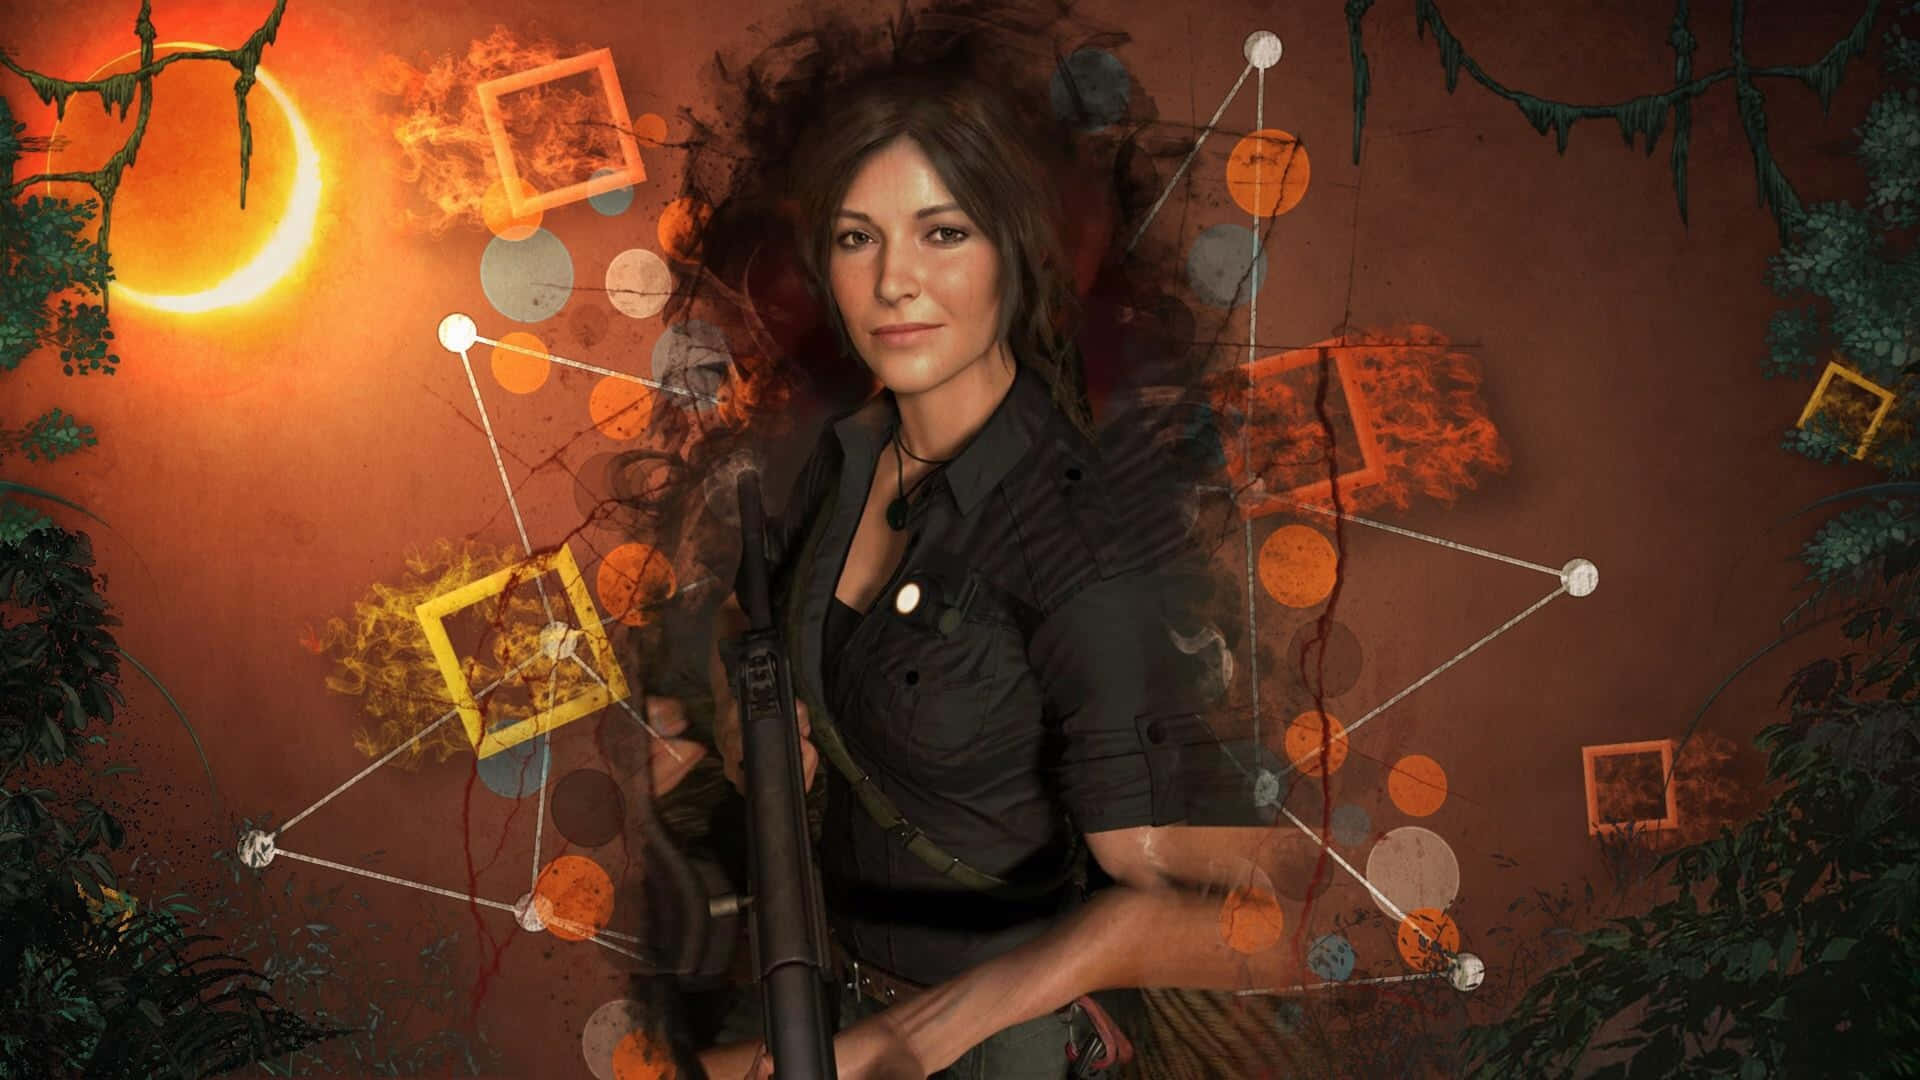 Följmed Lara Croft På Ett Äventyr I Shadow Of The Tomb Raider.